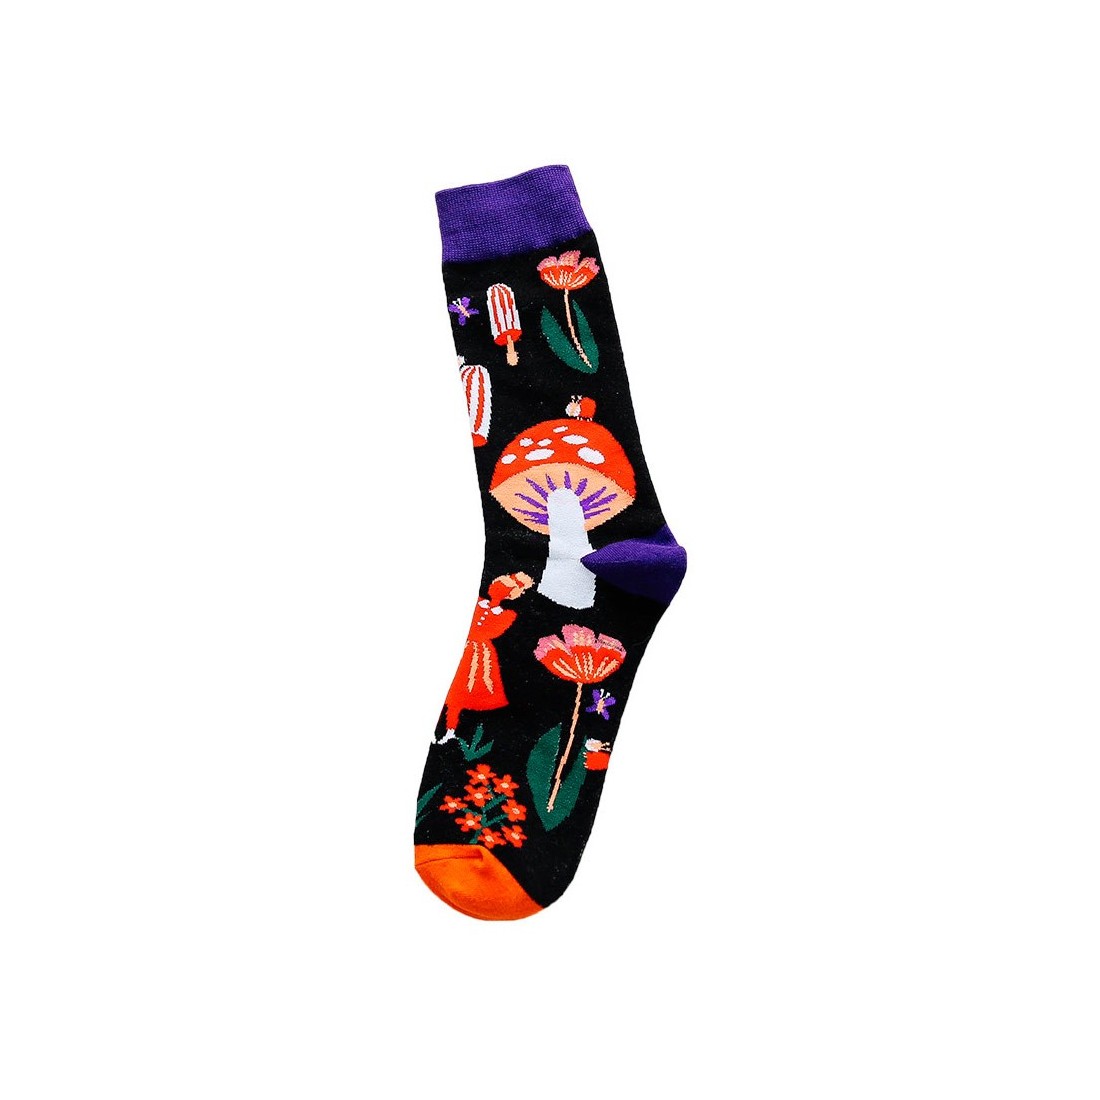 Mushroom printed socks 03